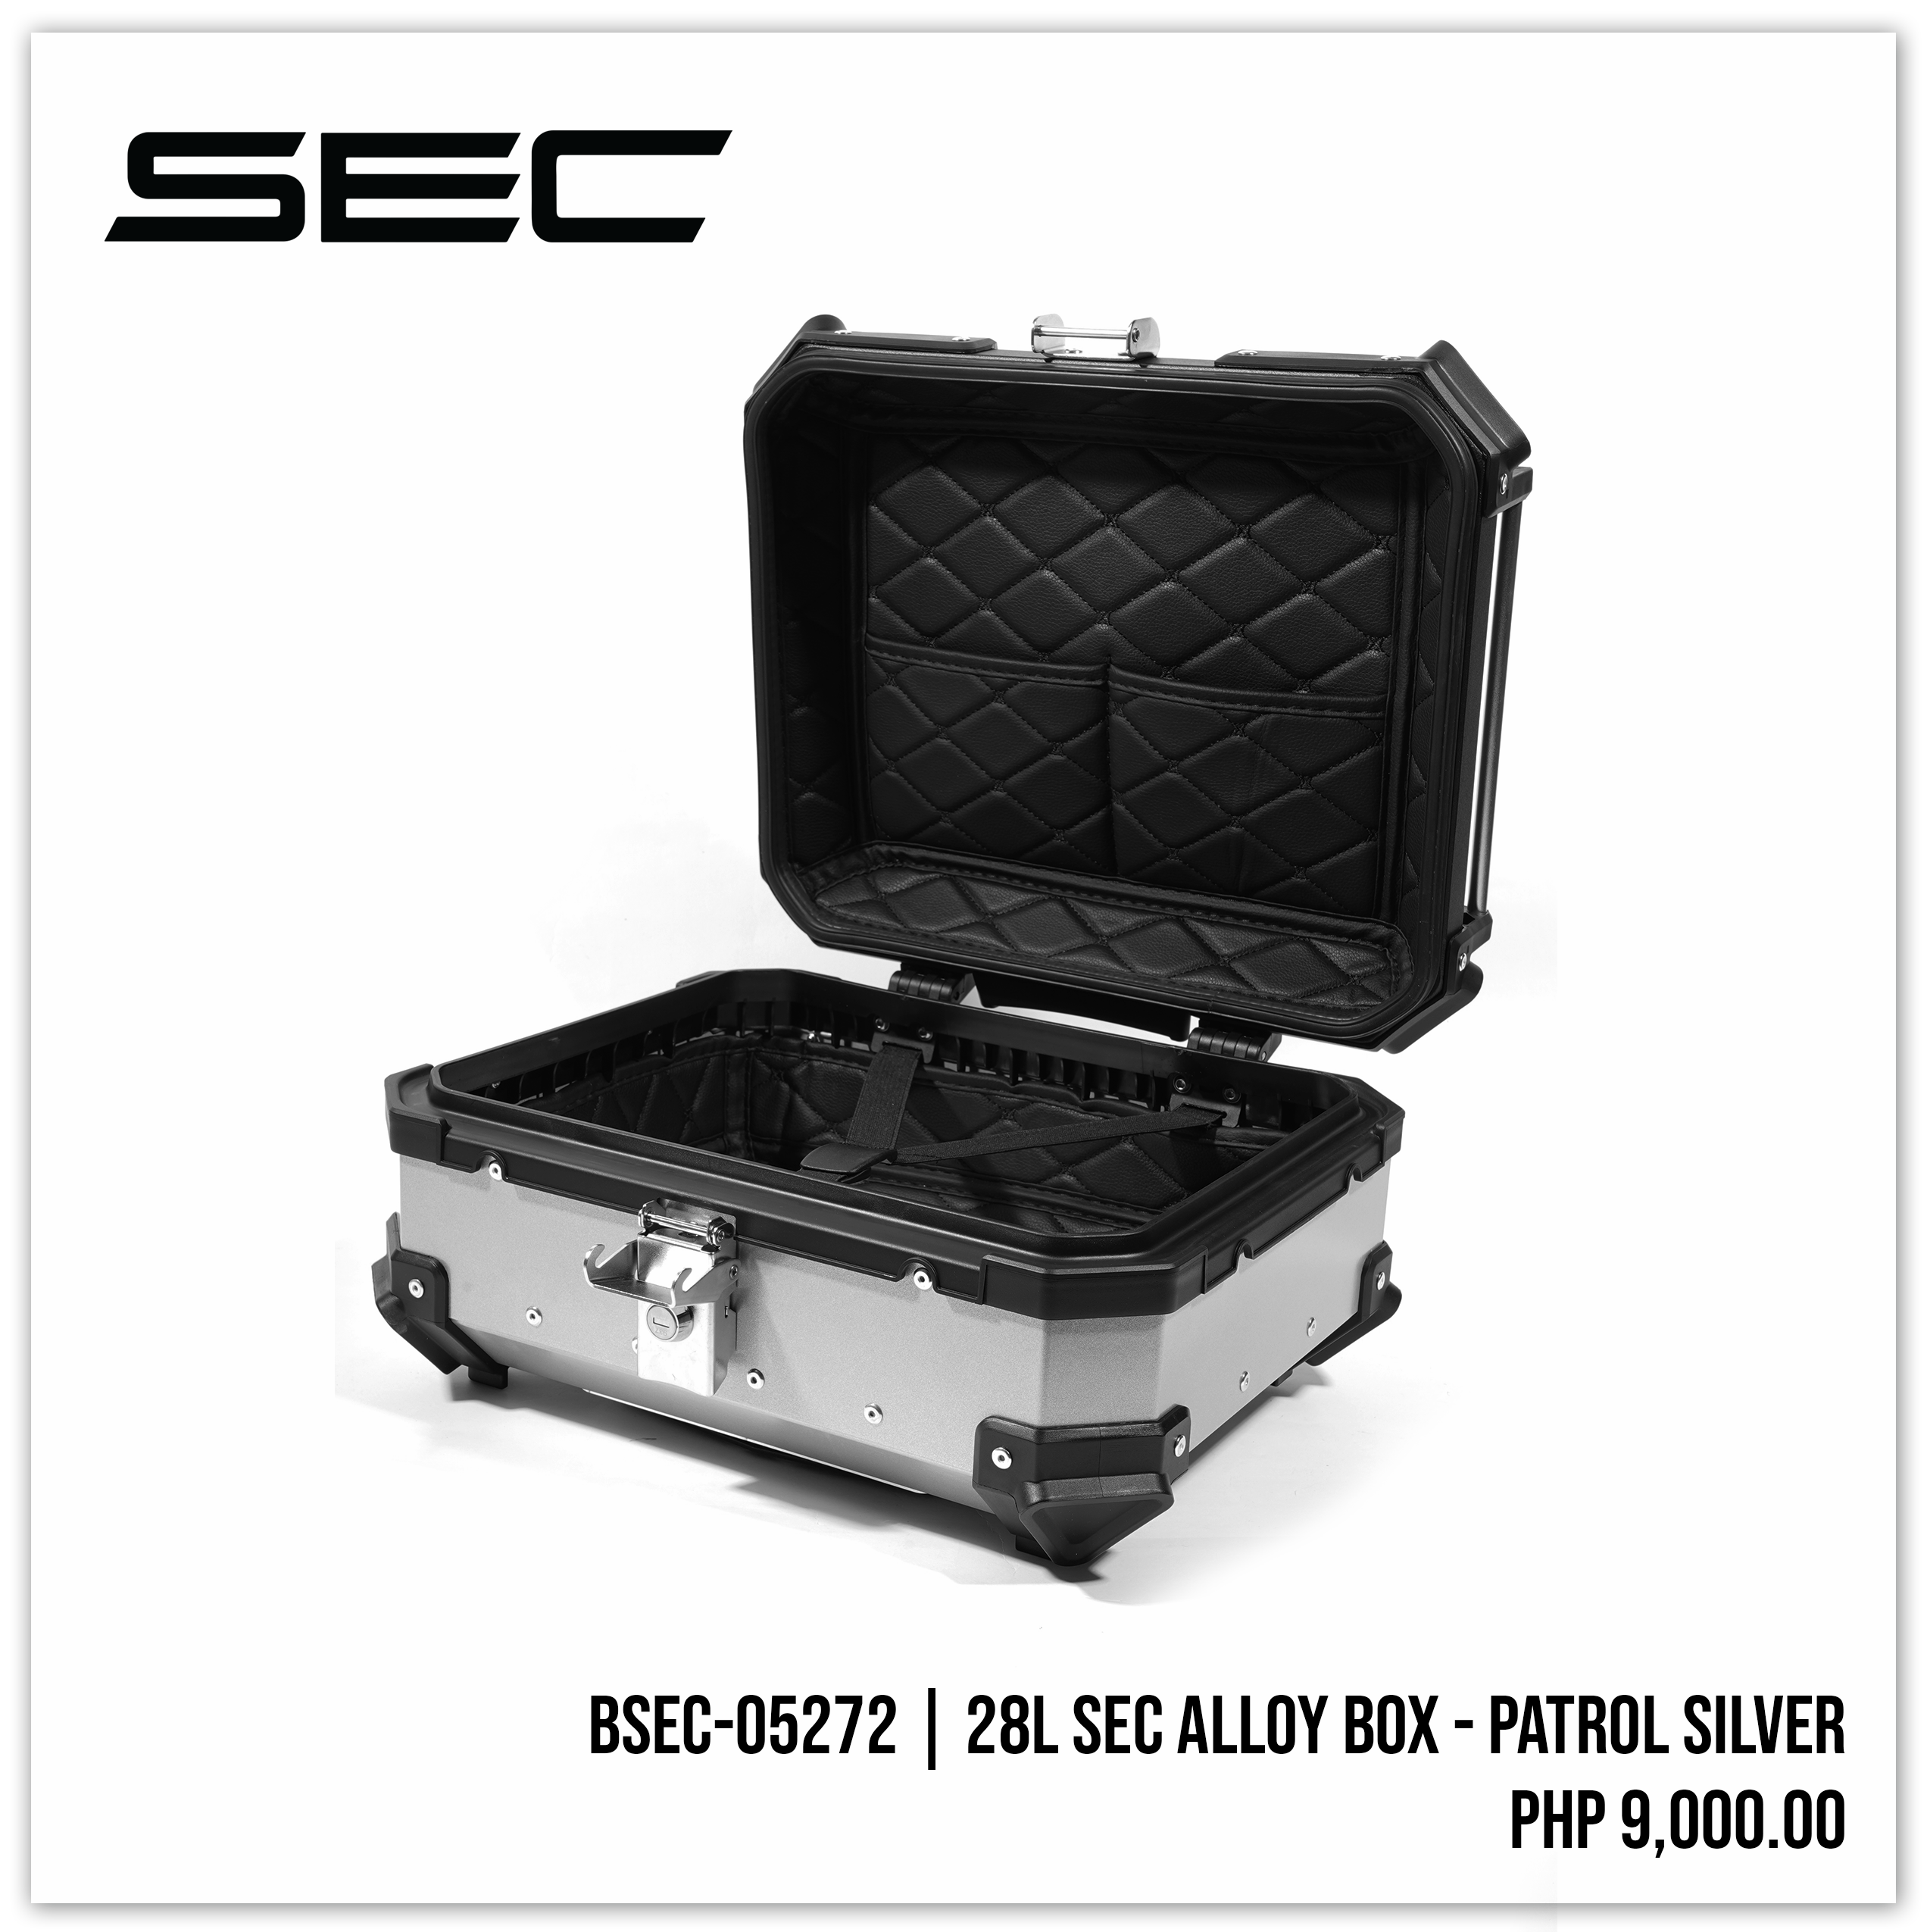 28L SEC Alloy Box - Patrol Silver